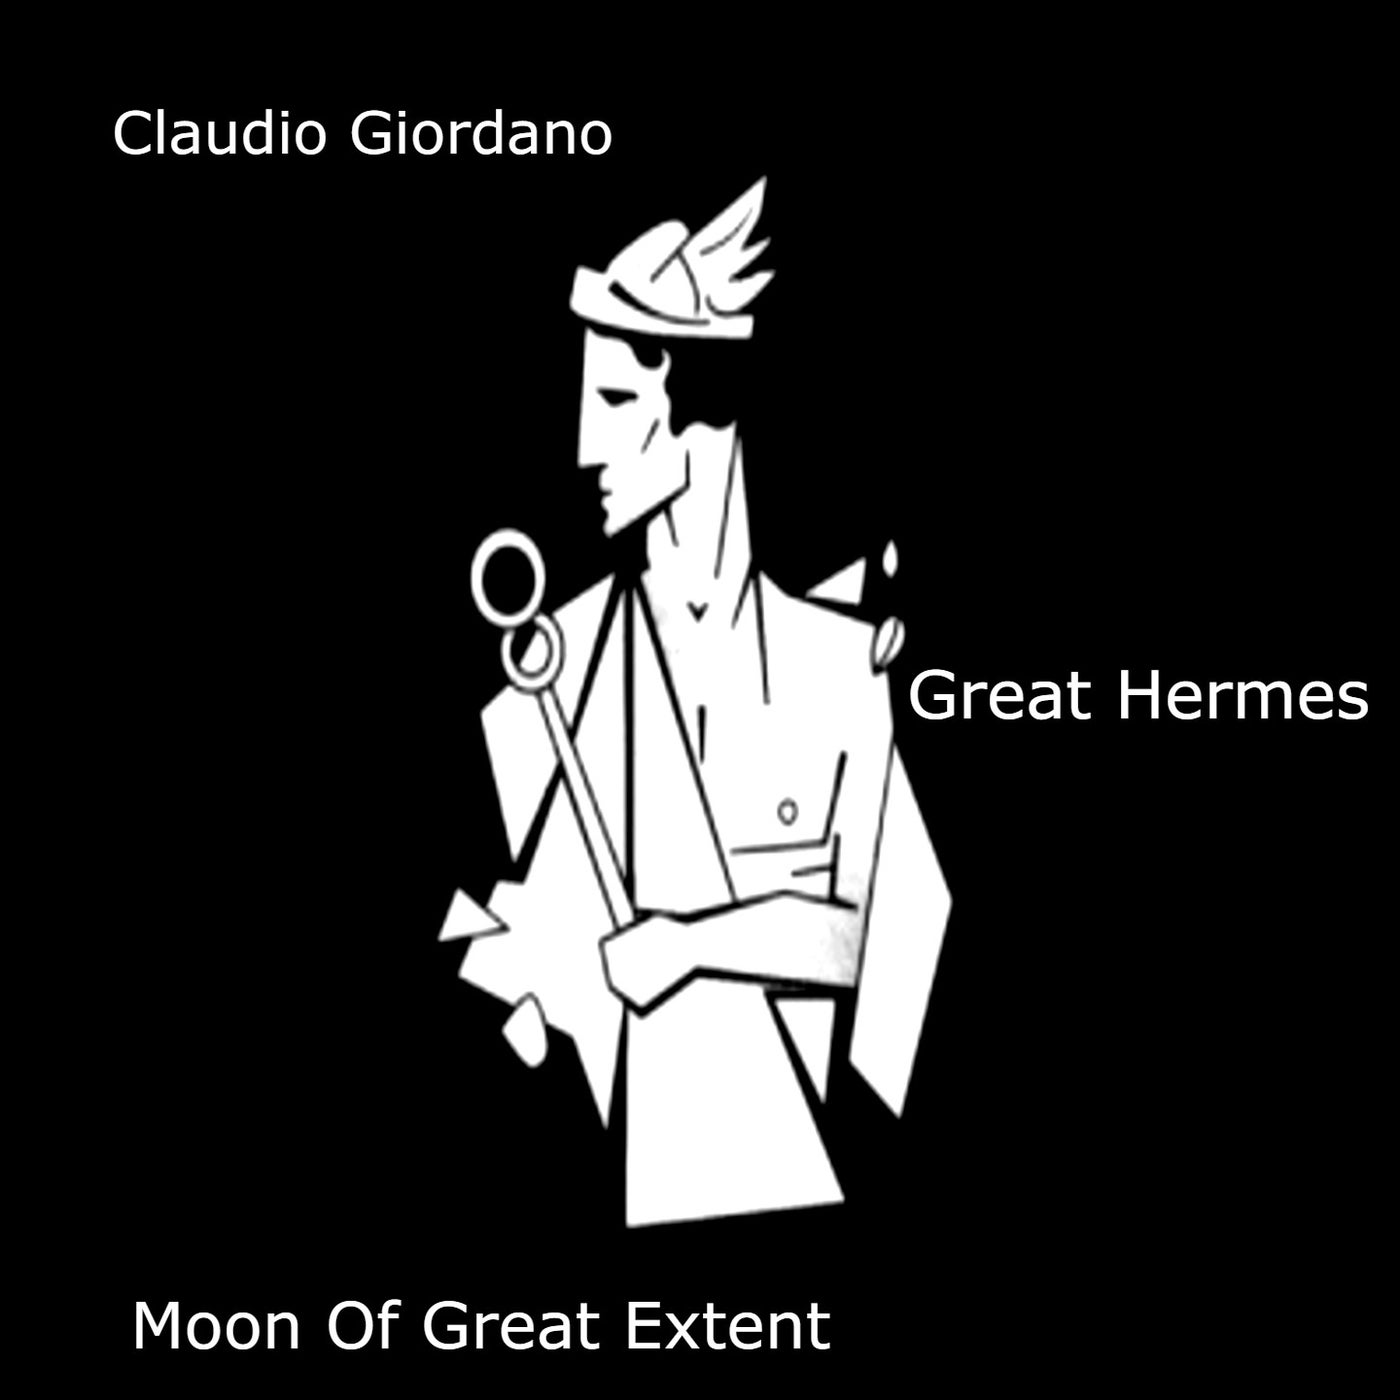 Great Hermes